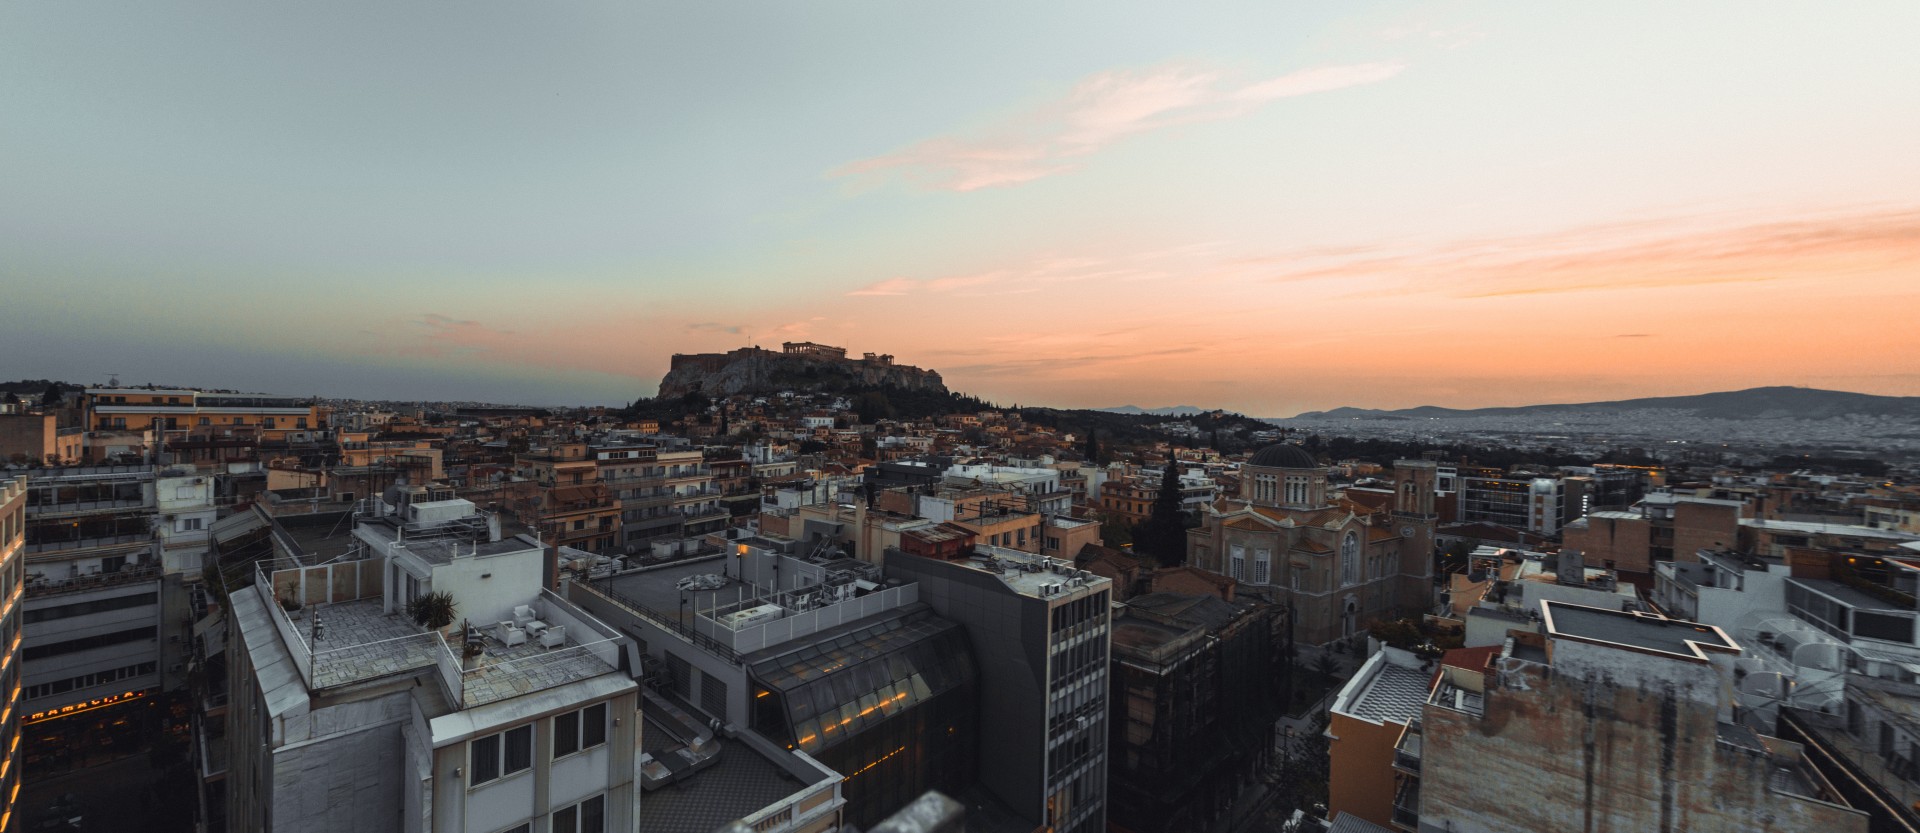 Τα ξενοδοχεία της Αθήνας με τα απόλυτα ατμοσφαιρικά roof garden